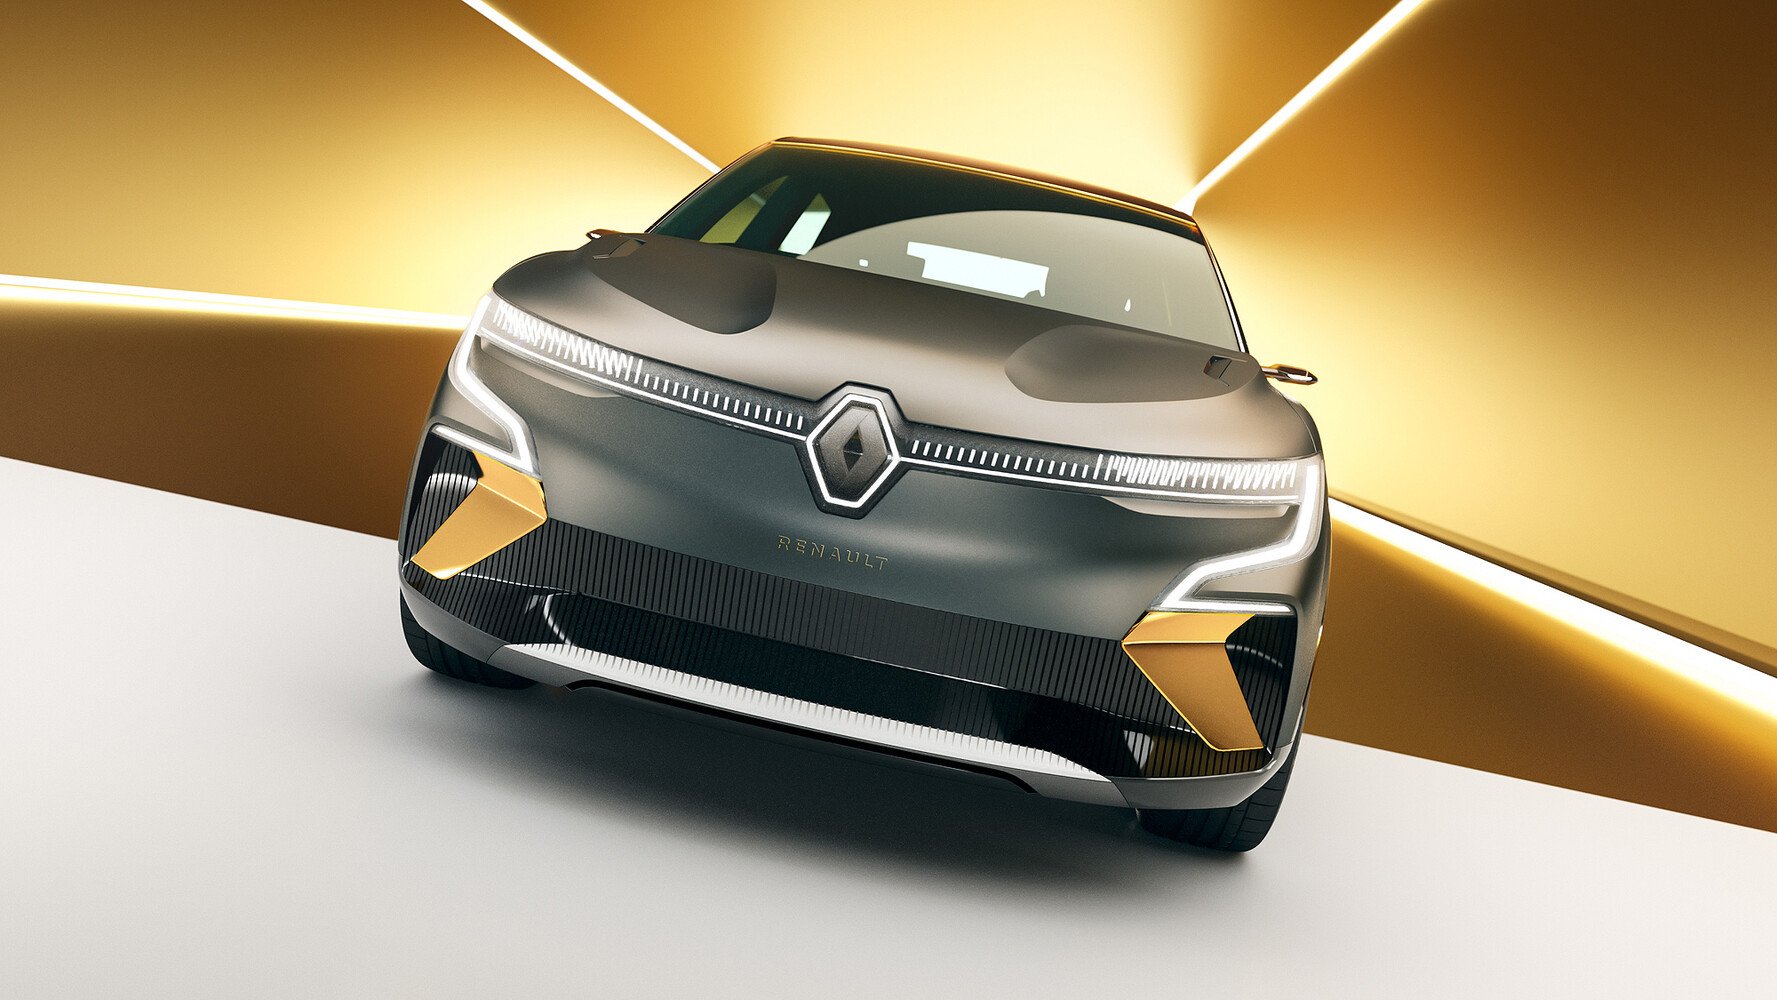 Renault Megane Evision 2021 Neuer Megane Kommt Elektrisch Autonotizen